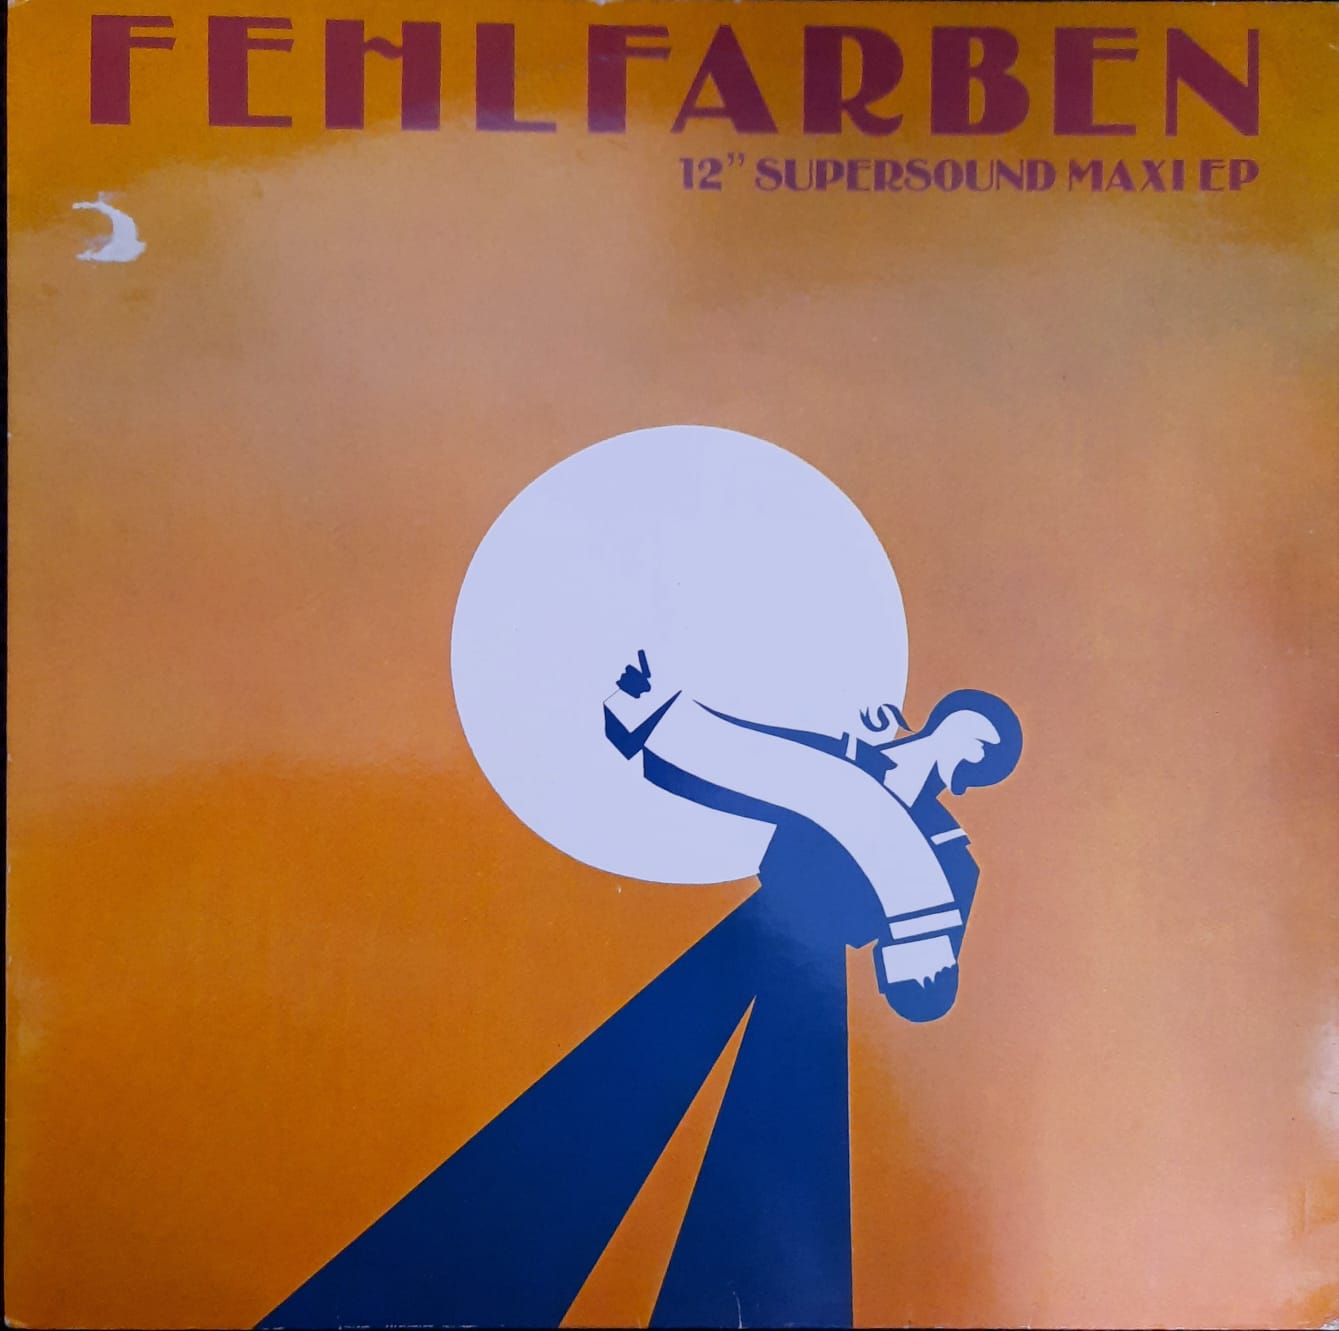 Fehlfarben – 14 Tage (12", Europa, 1982)